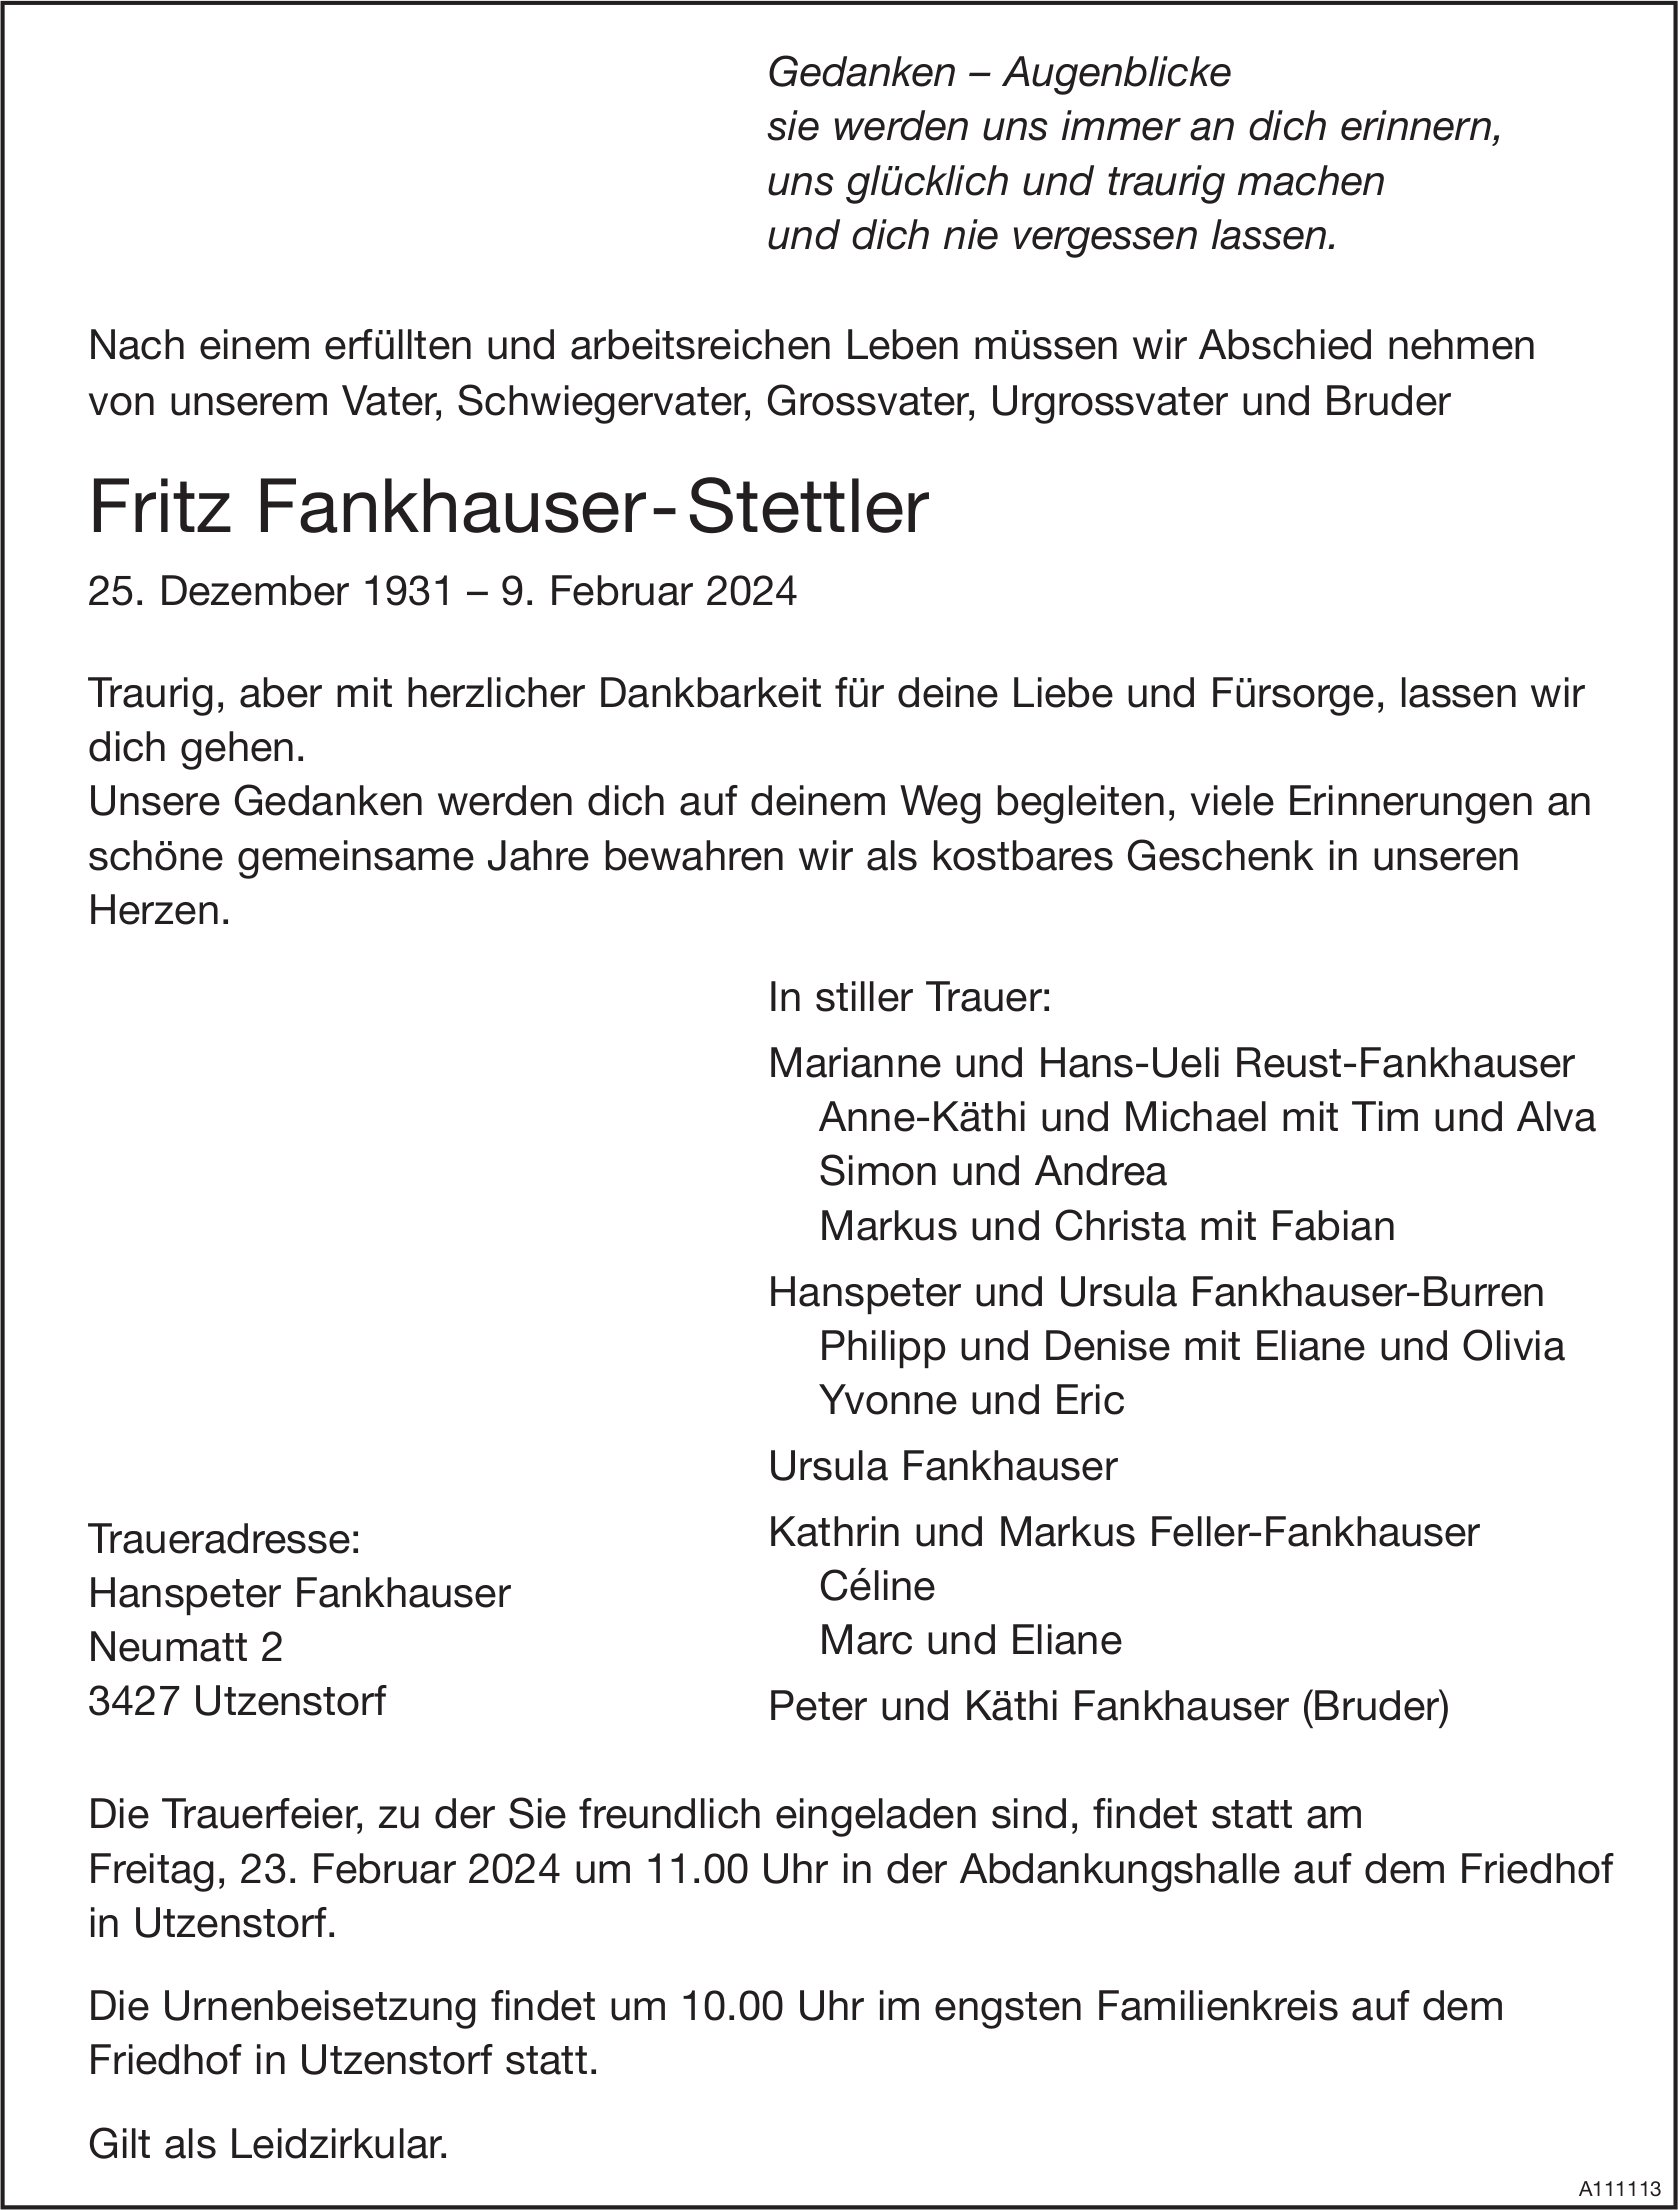 Fritz Fankhauser- Stettler, Februar 2024 / TA